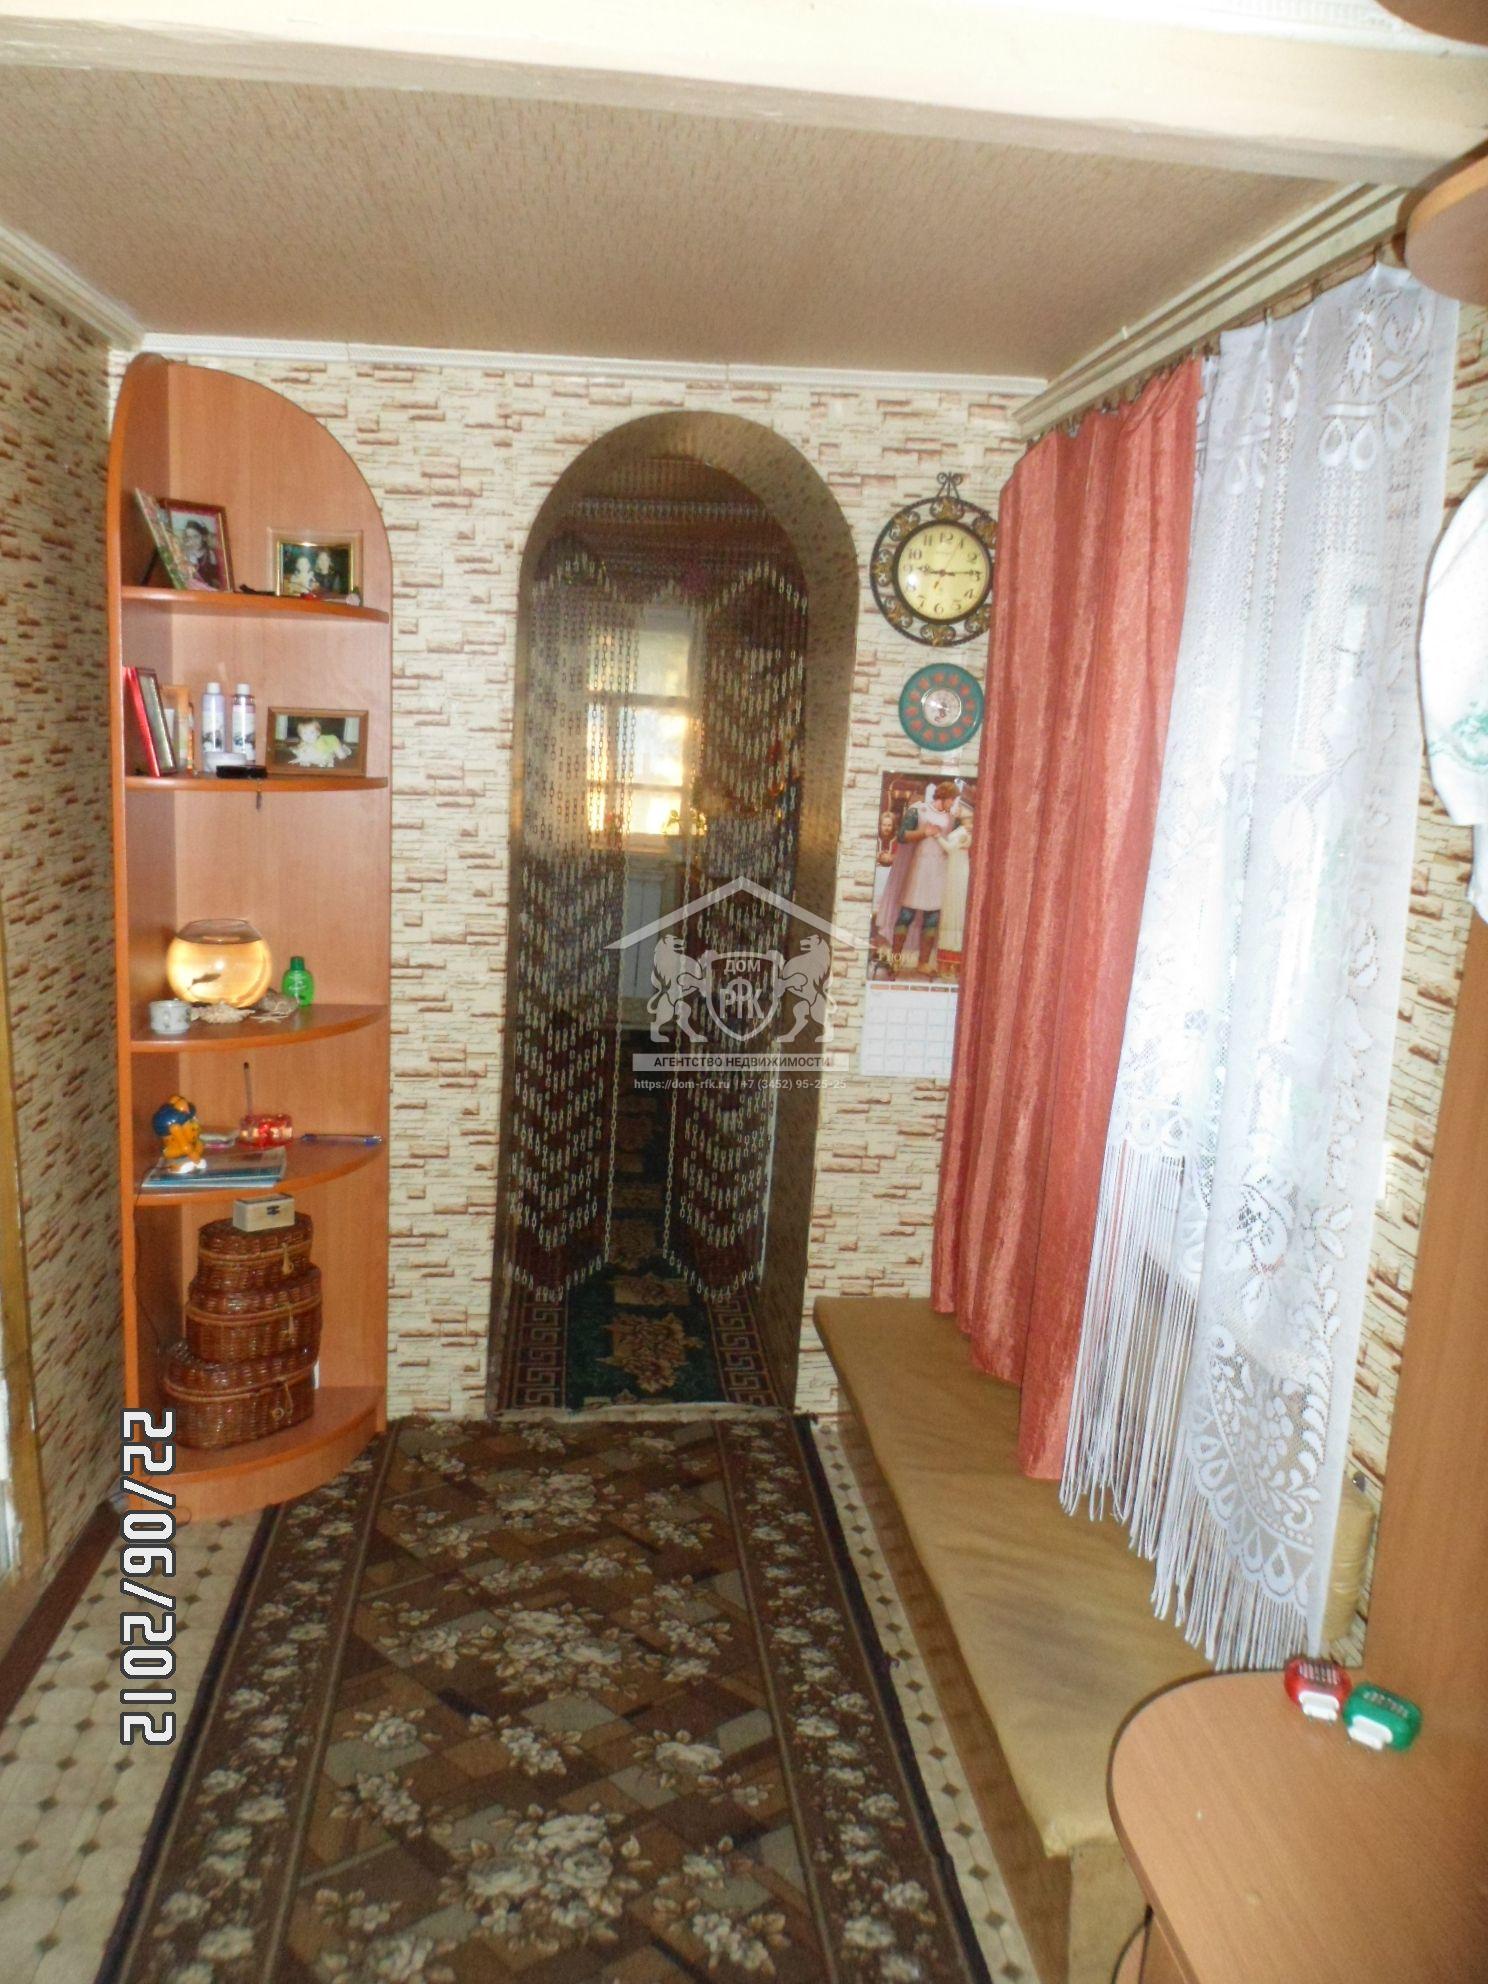 Жилой 2-х комнатный дом площадью 33,6 кв.м в с.Бердюжье Тюменской области